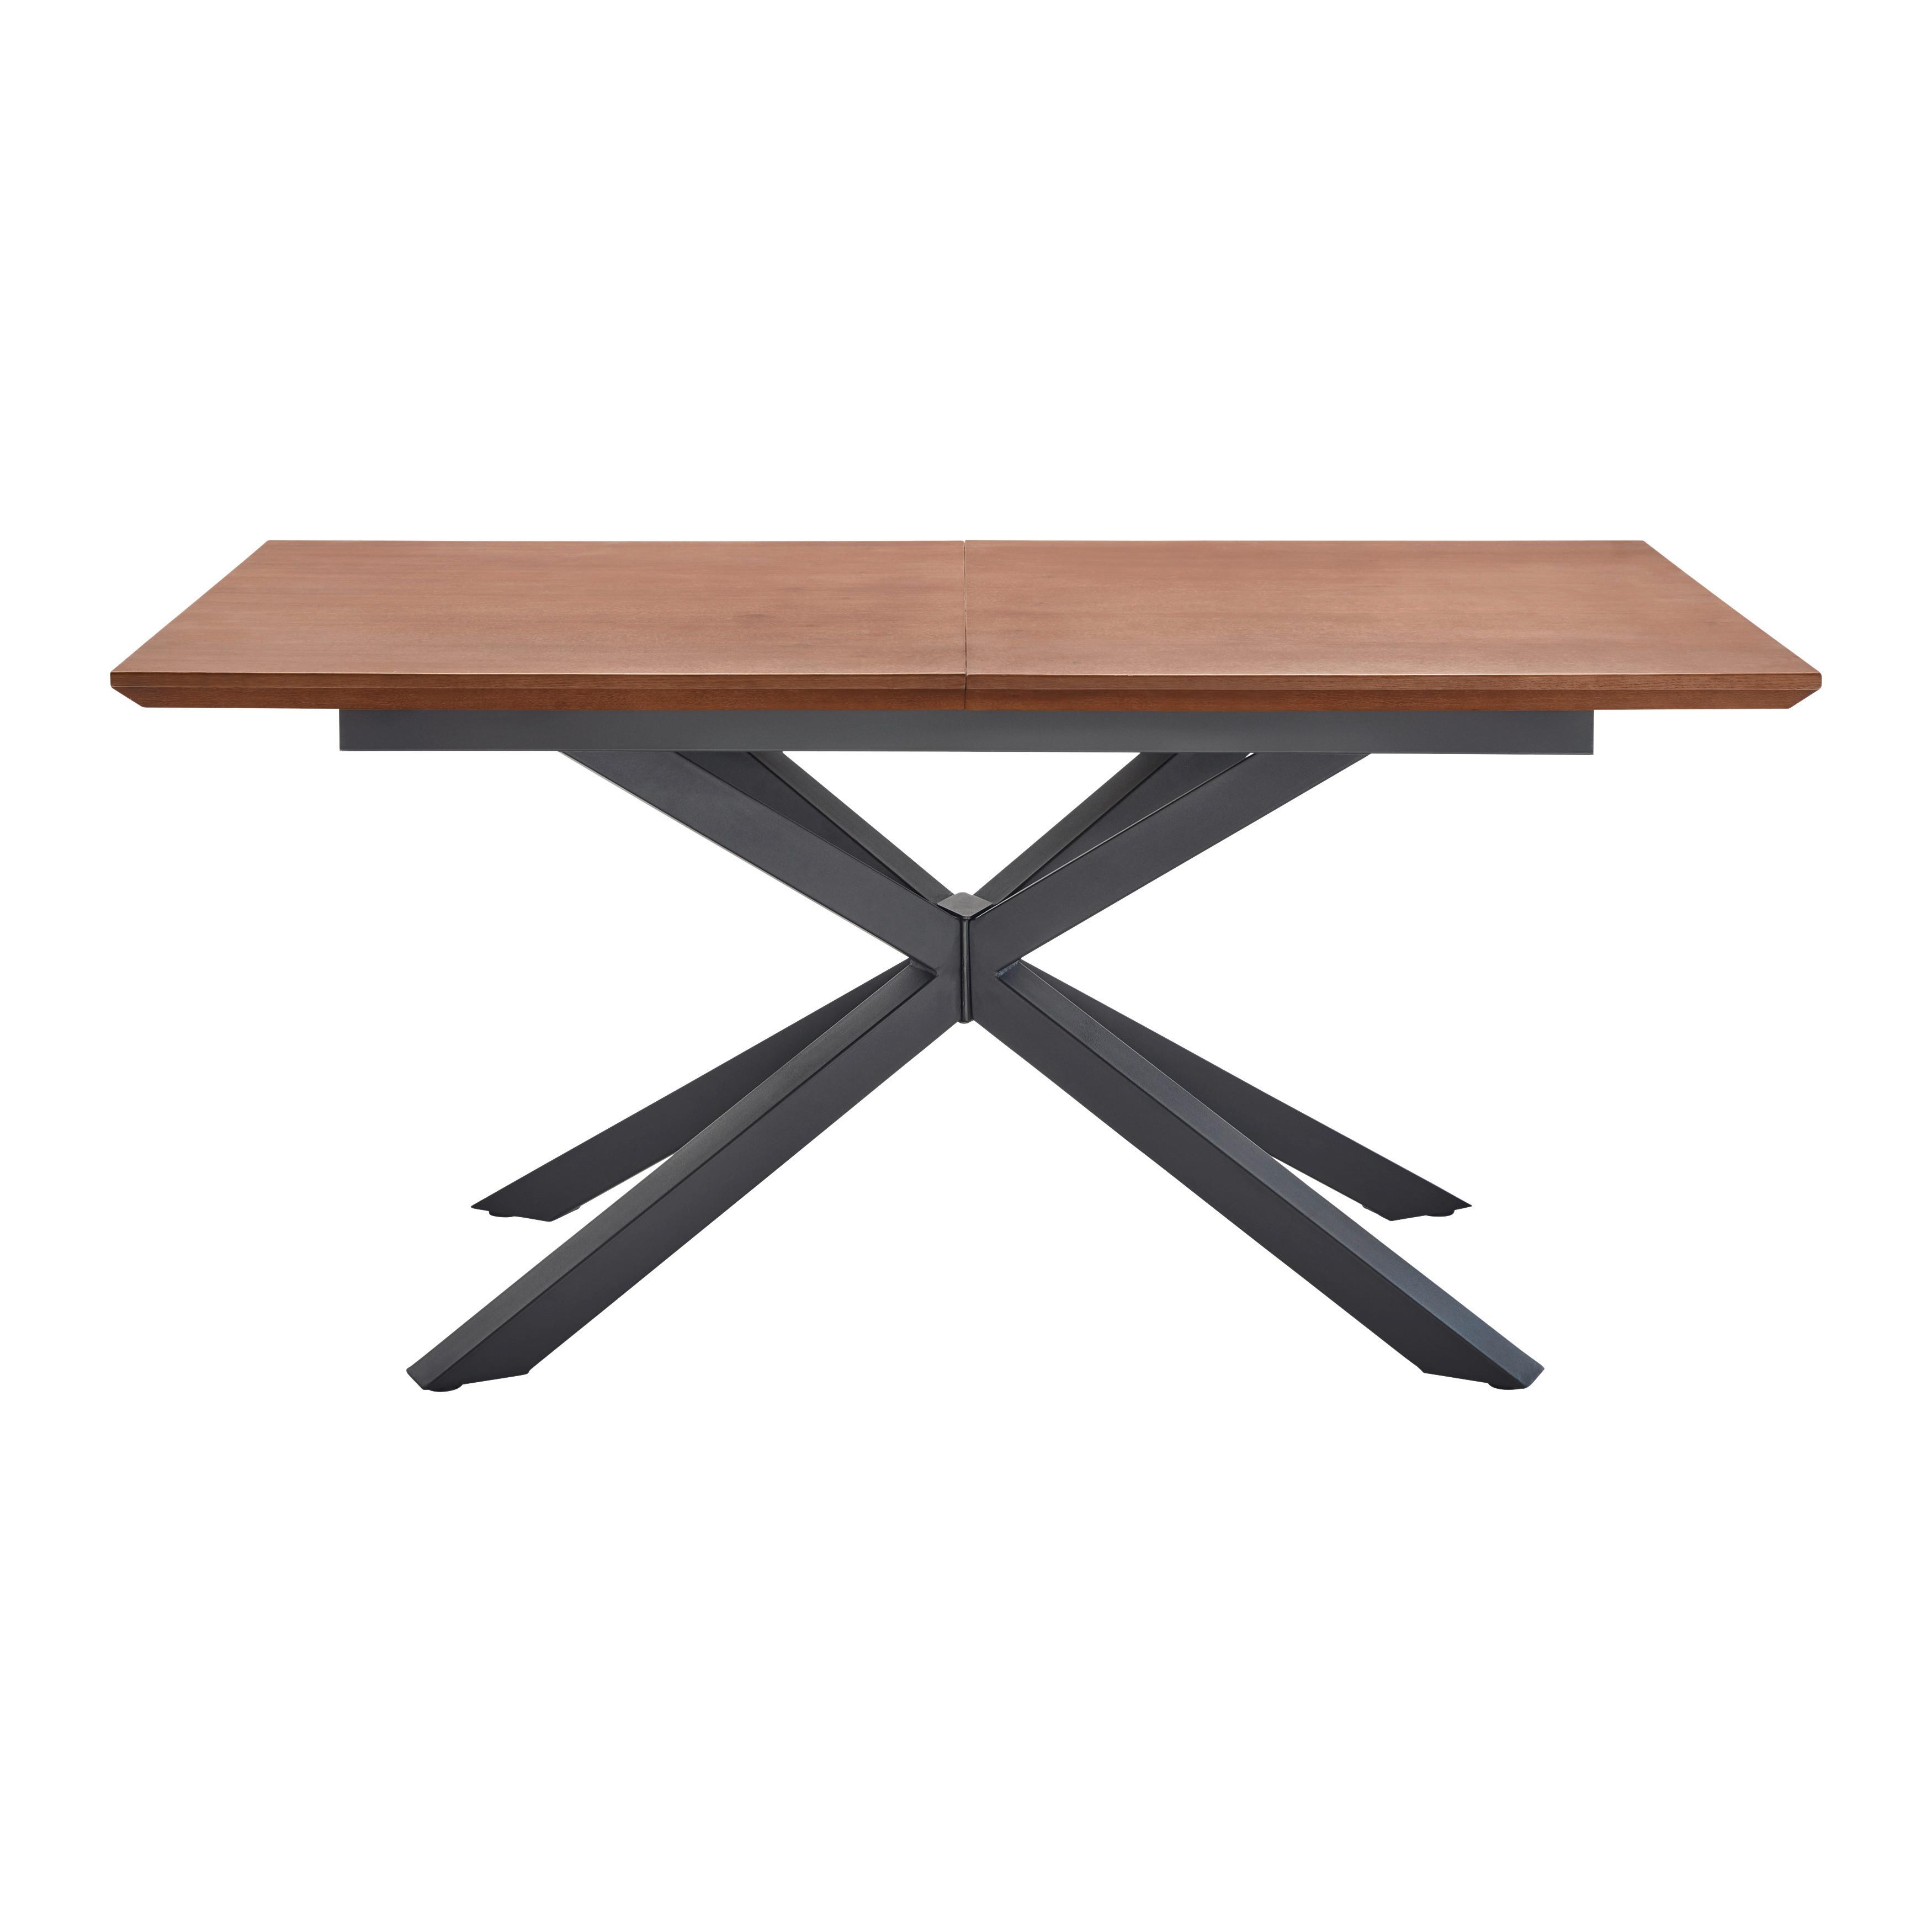 Jedálenský Stôl S Rozkladom Fulvio 160-200 Cm - čierna/farby vlašského orecha, Moderný, kov/drevo (160-200/90/77cm) - P & B